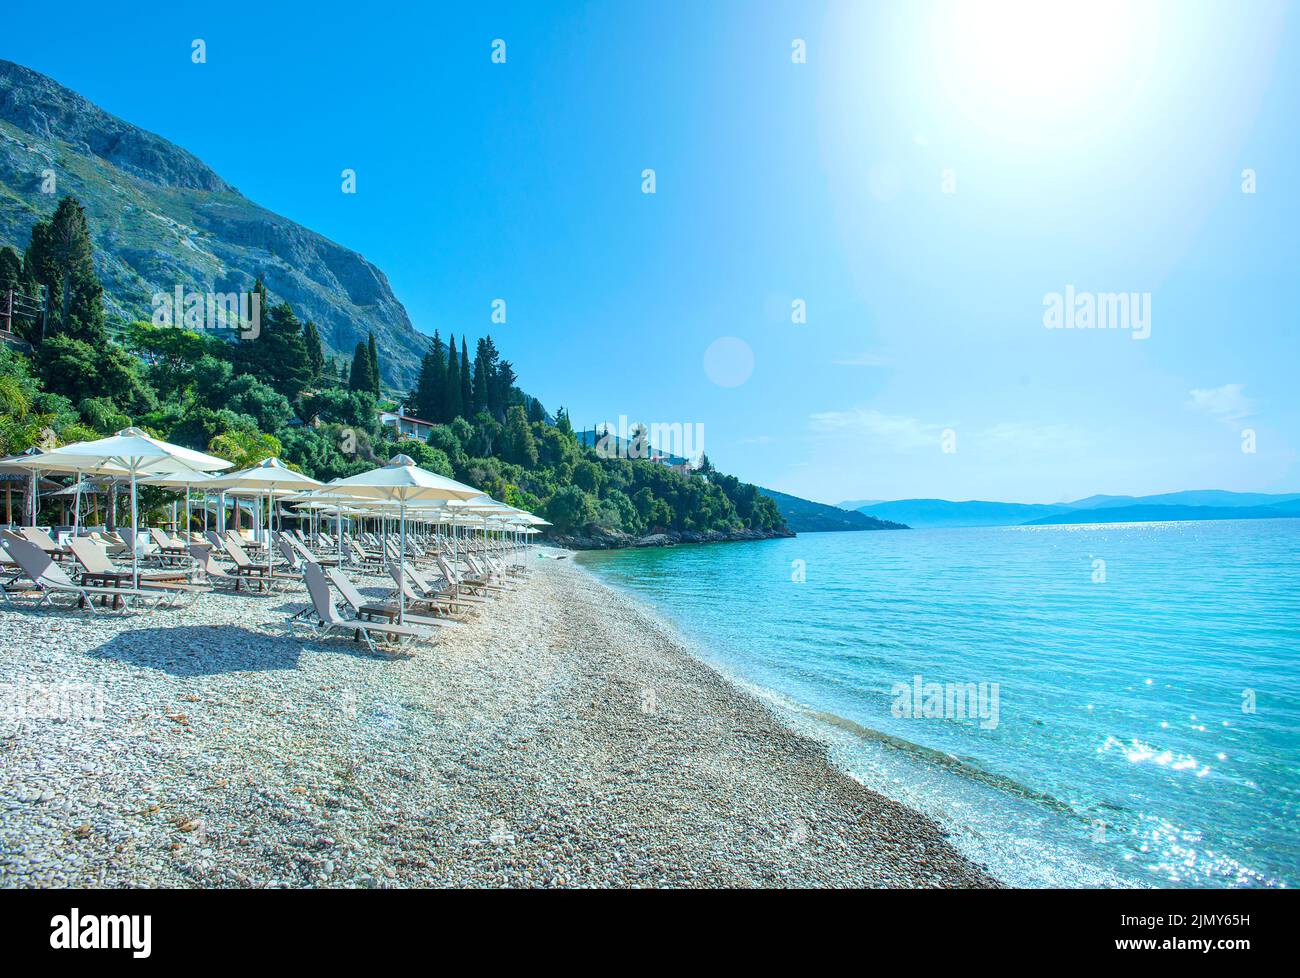 Barbati Beach, Corfu, Ionian islands, Greece Stock Photo